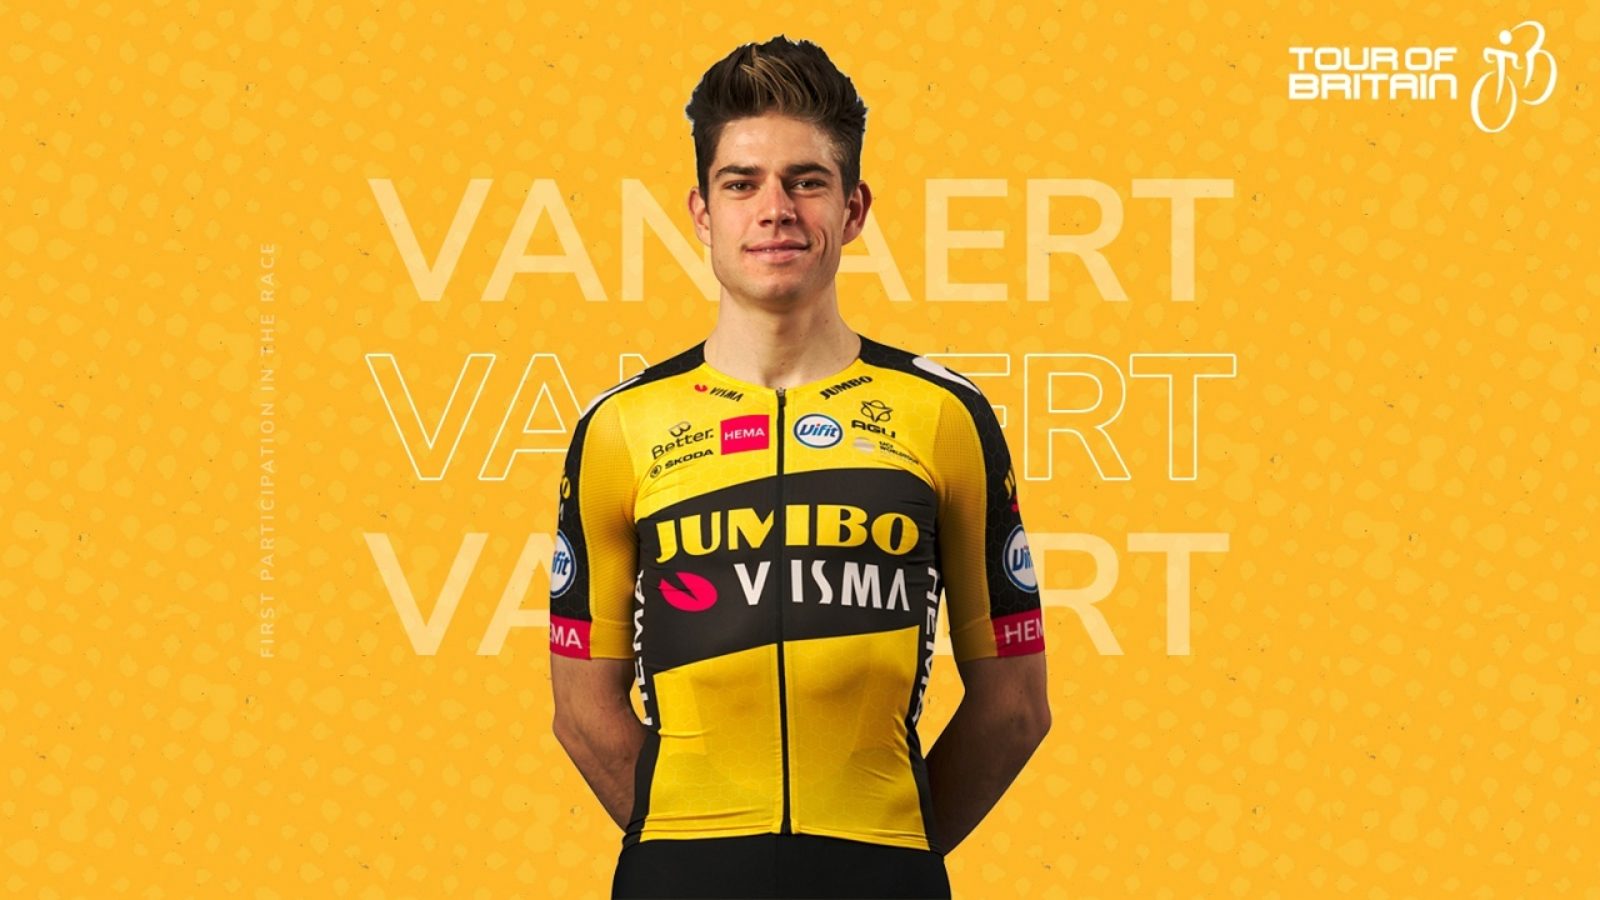 Belgian star Wout Van Aert to make Tour of Britain debut